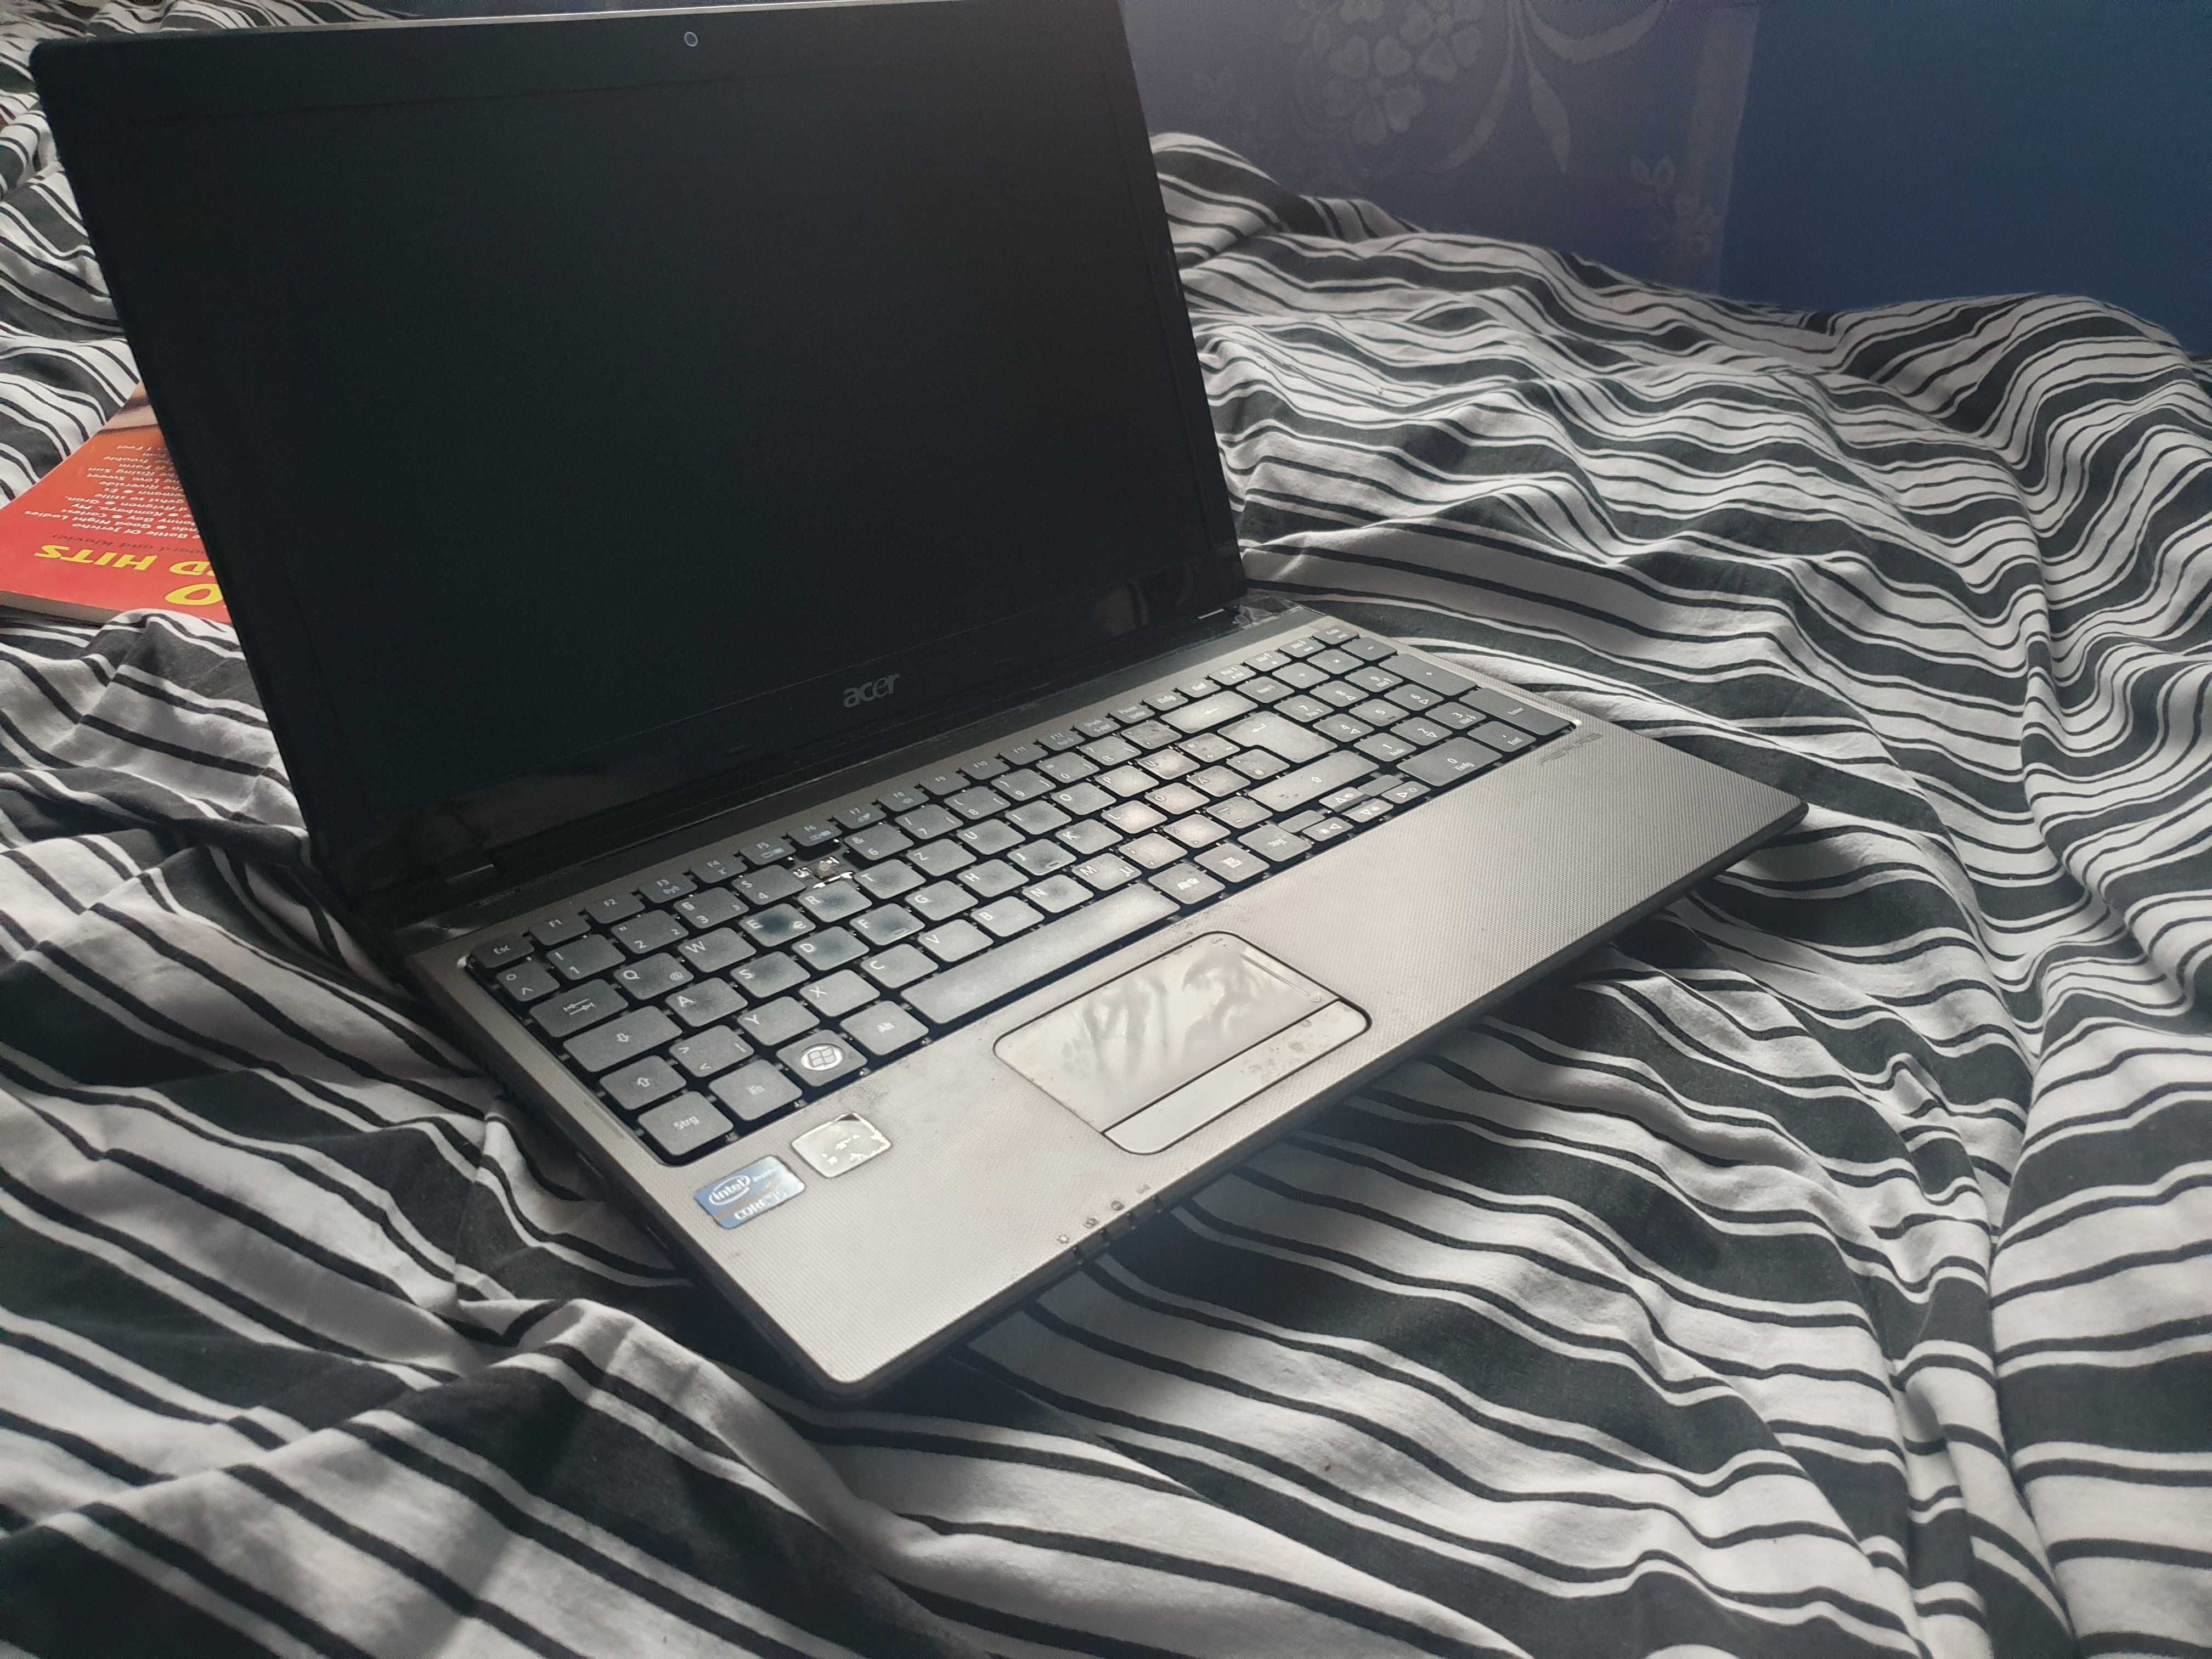 Laptop Acer Aspire 5750 I5